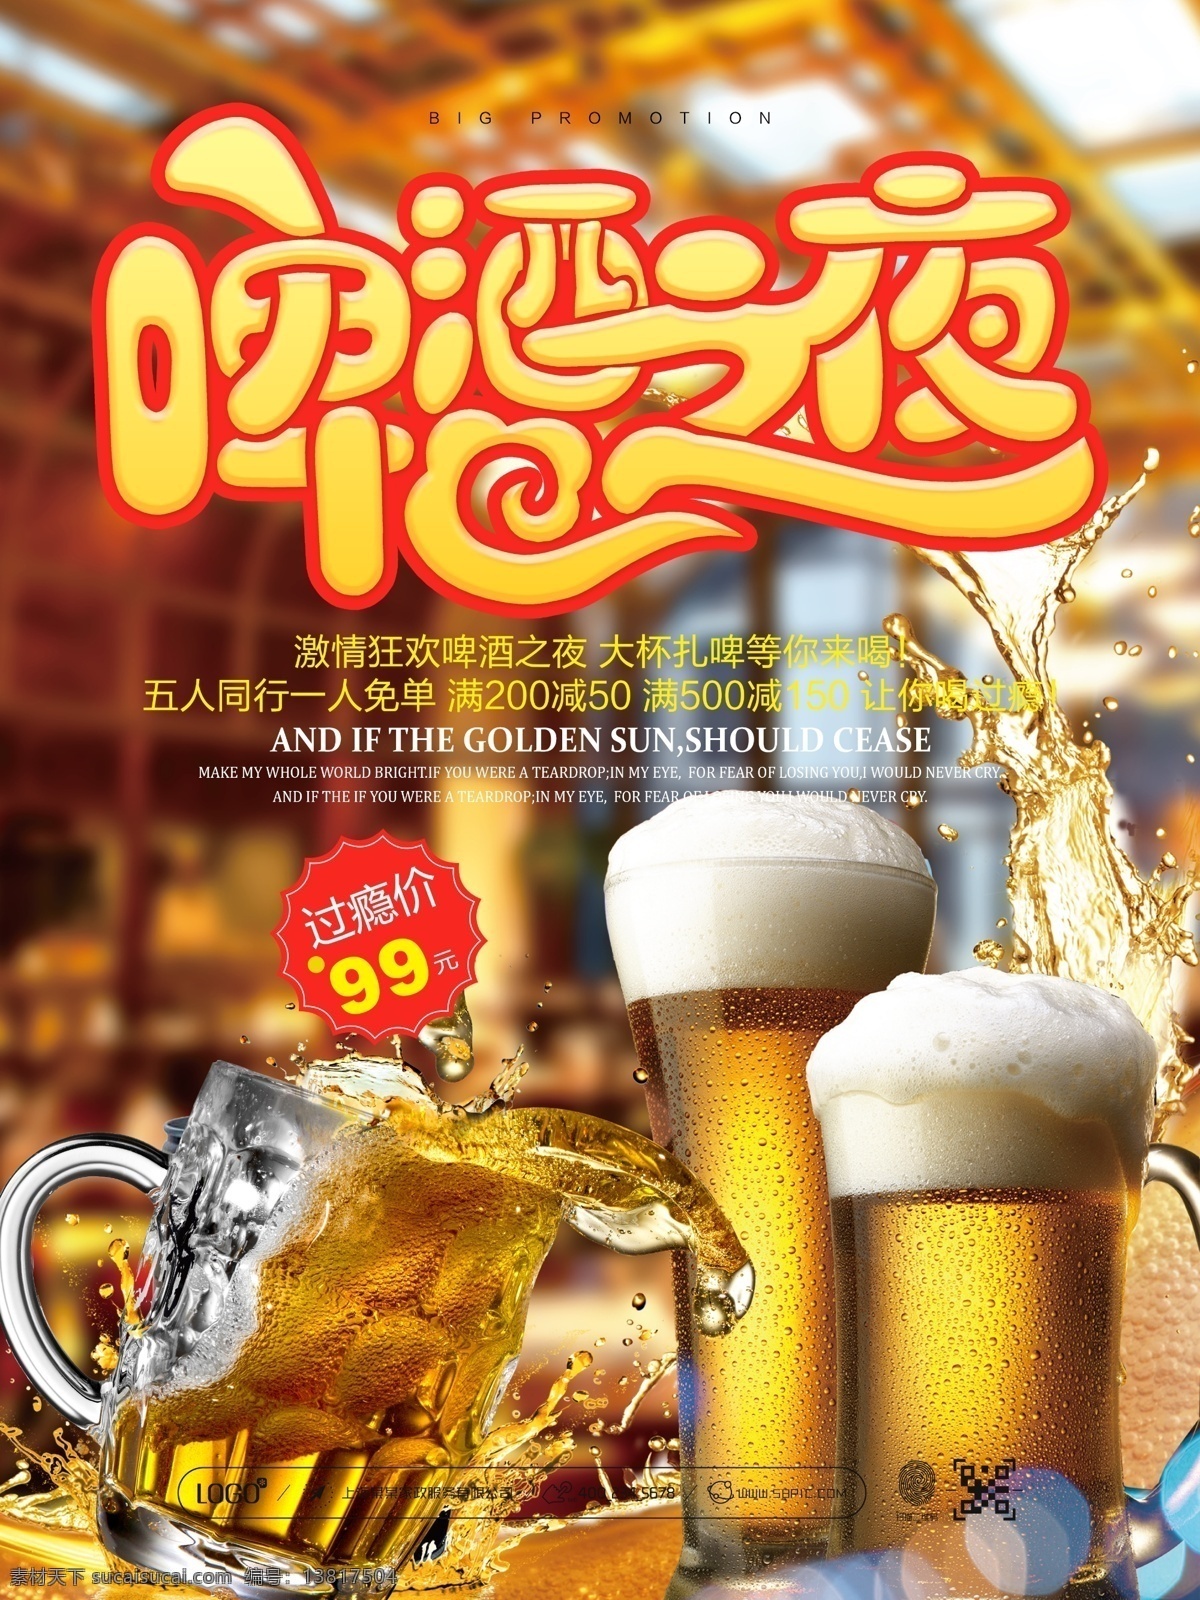 盛夏 啤酒 夜 活动 宣传 活 促销 海报 夏日 啤酒之夜 啤酒节 扎啤 啤酒海报 啤酒广告 啤酒素材 哈啤一夏